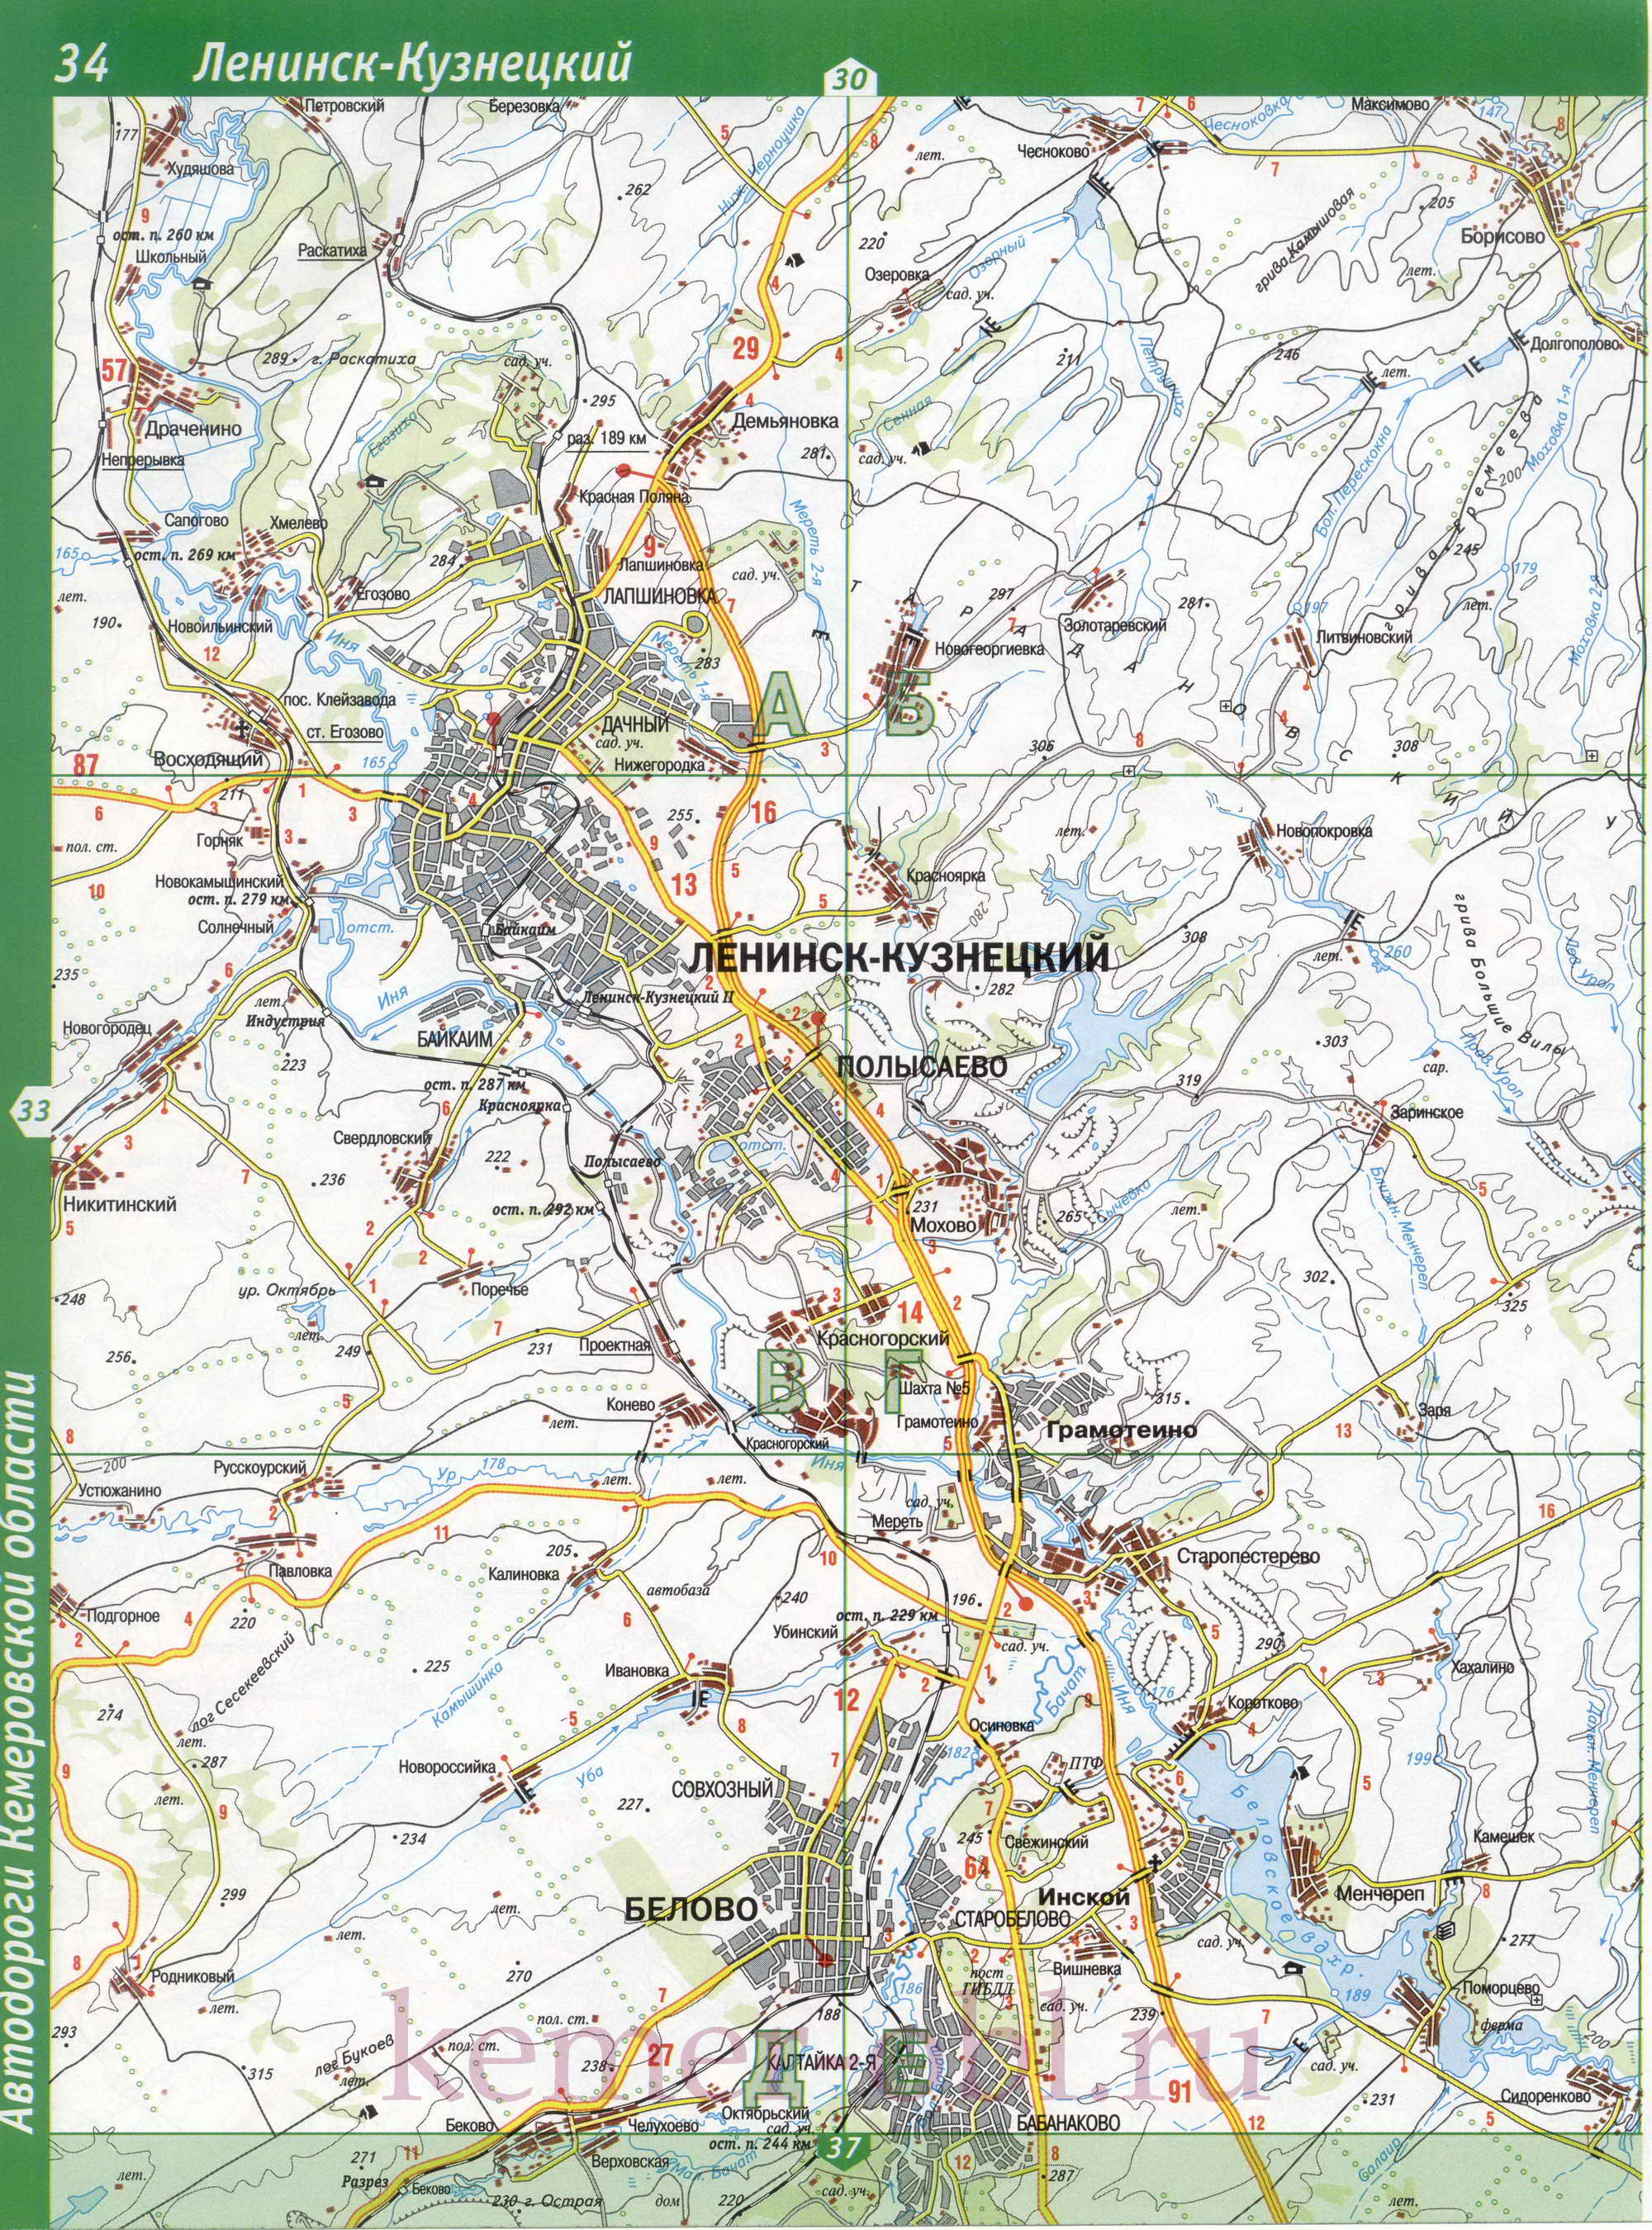 Карта Ленинск-Кузнецкий р-он Кемеровской области. Карта автодорог Ленинск-Кузнецкого района, B0 - 